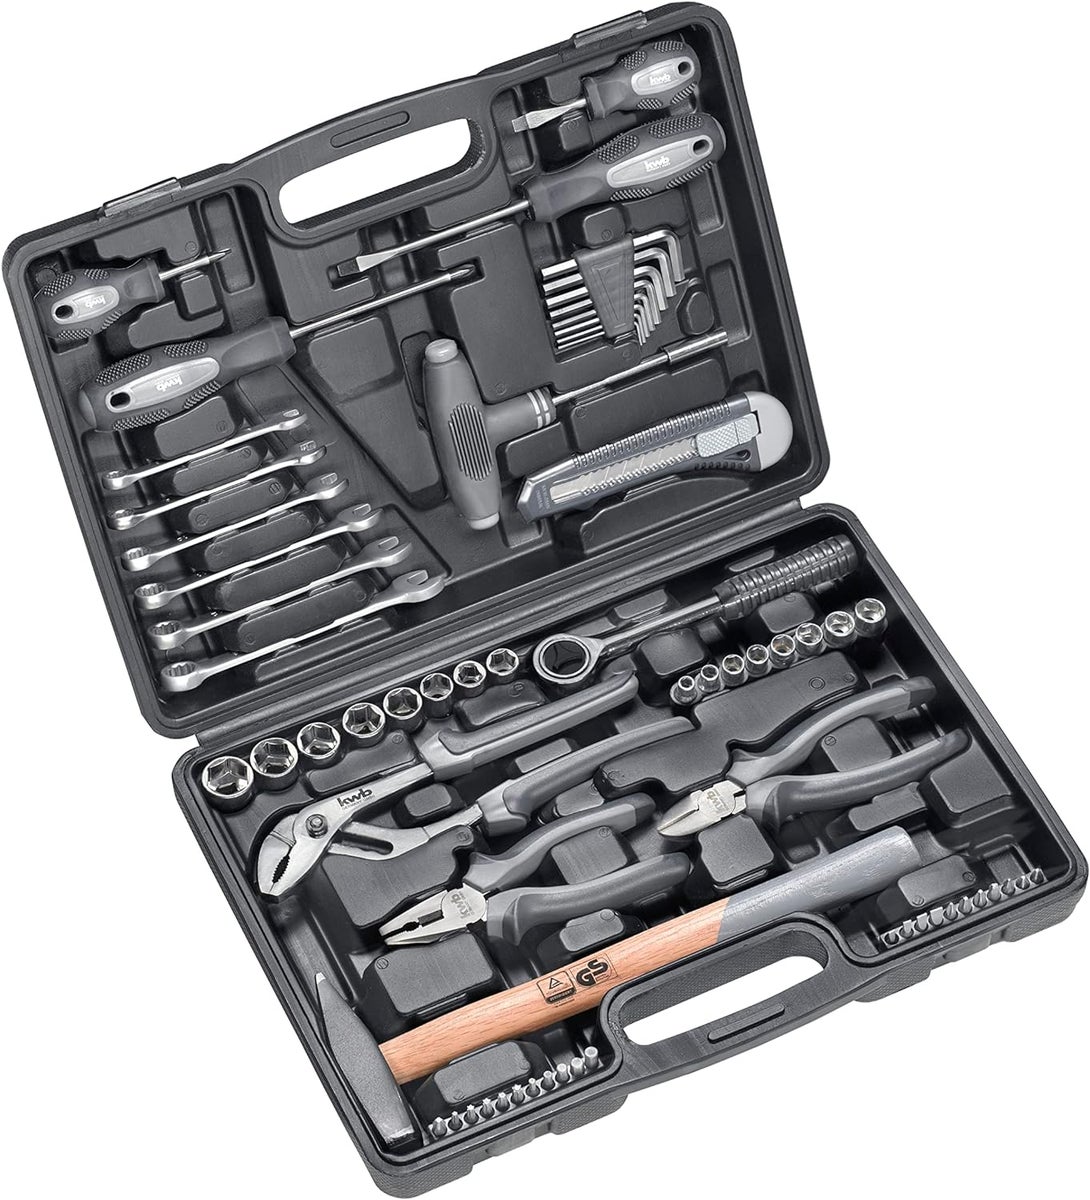 kwb Werkzeugkoffer aus robustem Hartkunststoff inkl. 63-tlg. hochwertigem Werkzeug-Set als solide Grundausstattung für leichte Anwendungsfälle im Haushalt, der Werkstatt oder dem mobilen Einsatz